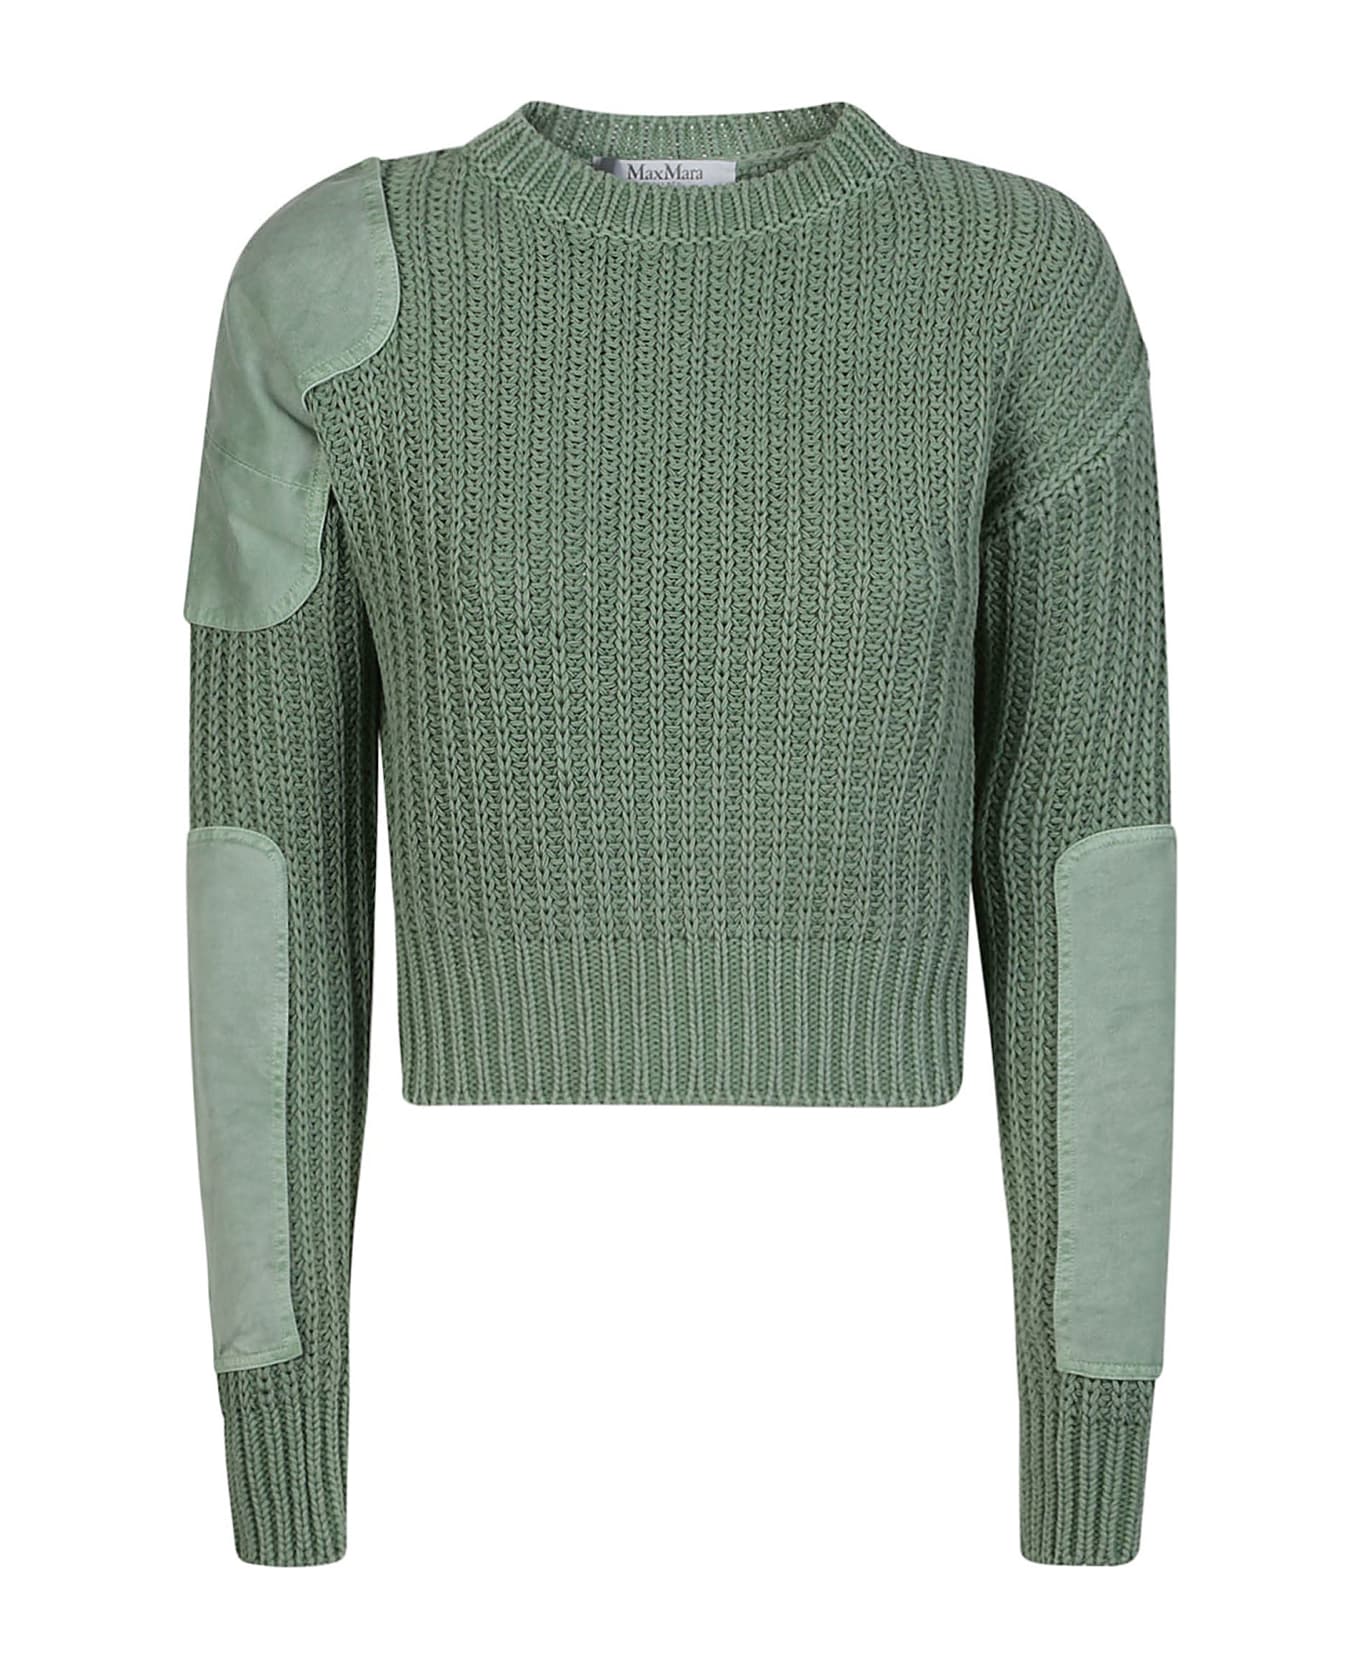 Max Mara Abisso1234 Sweater - Salvia Unito